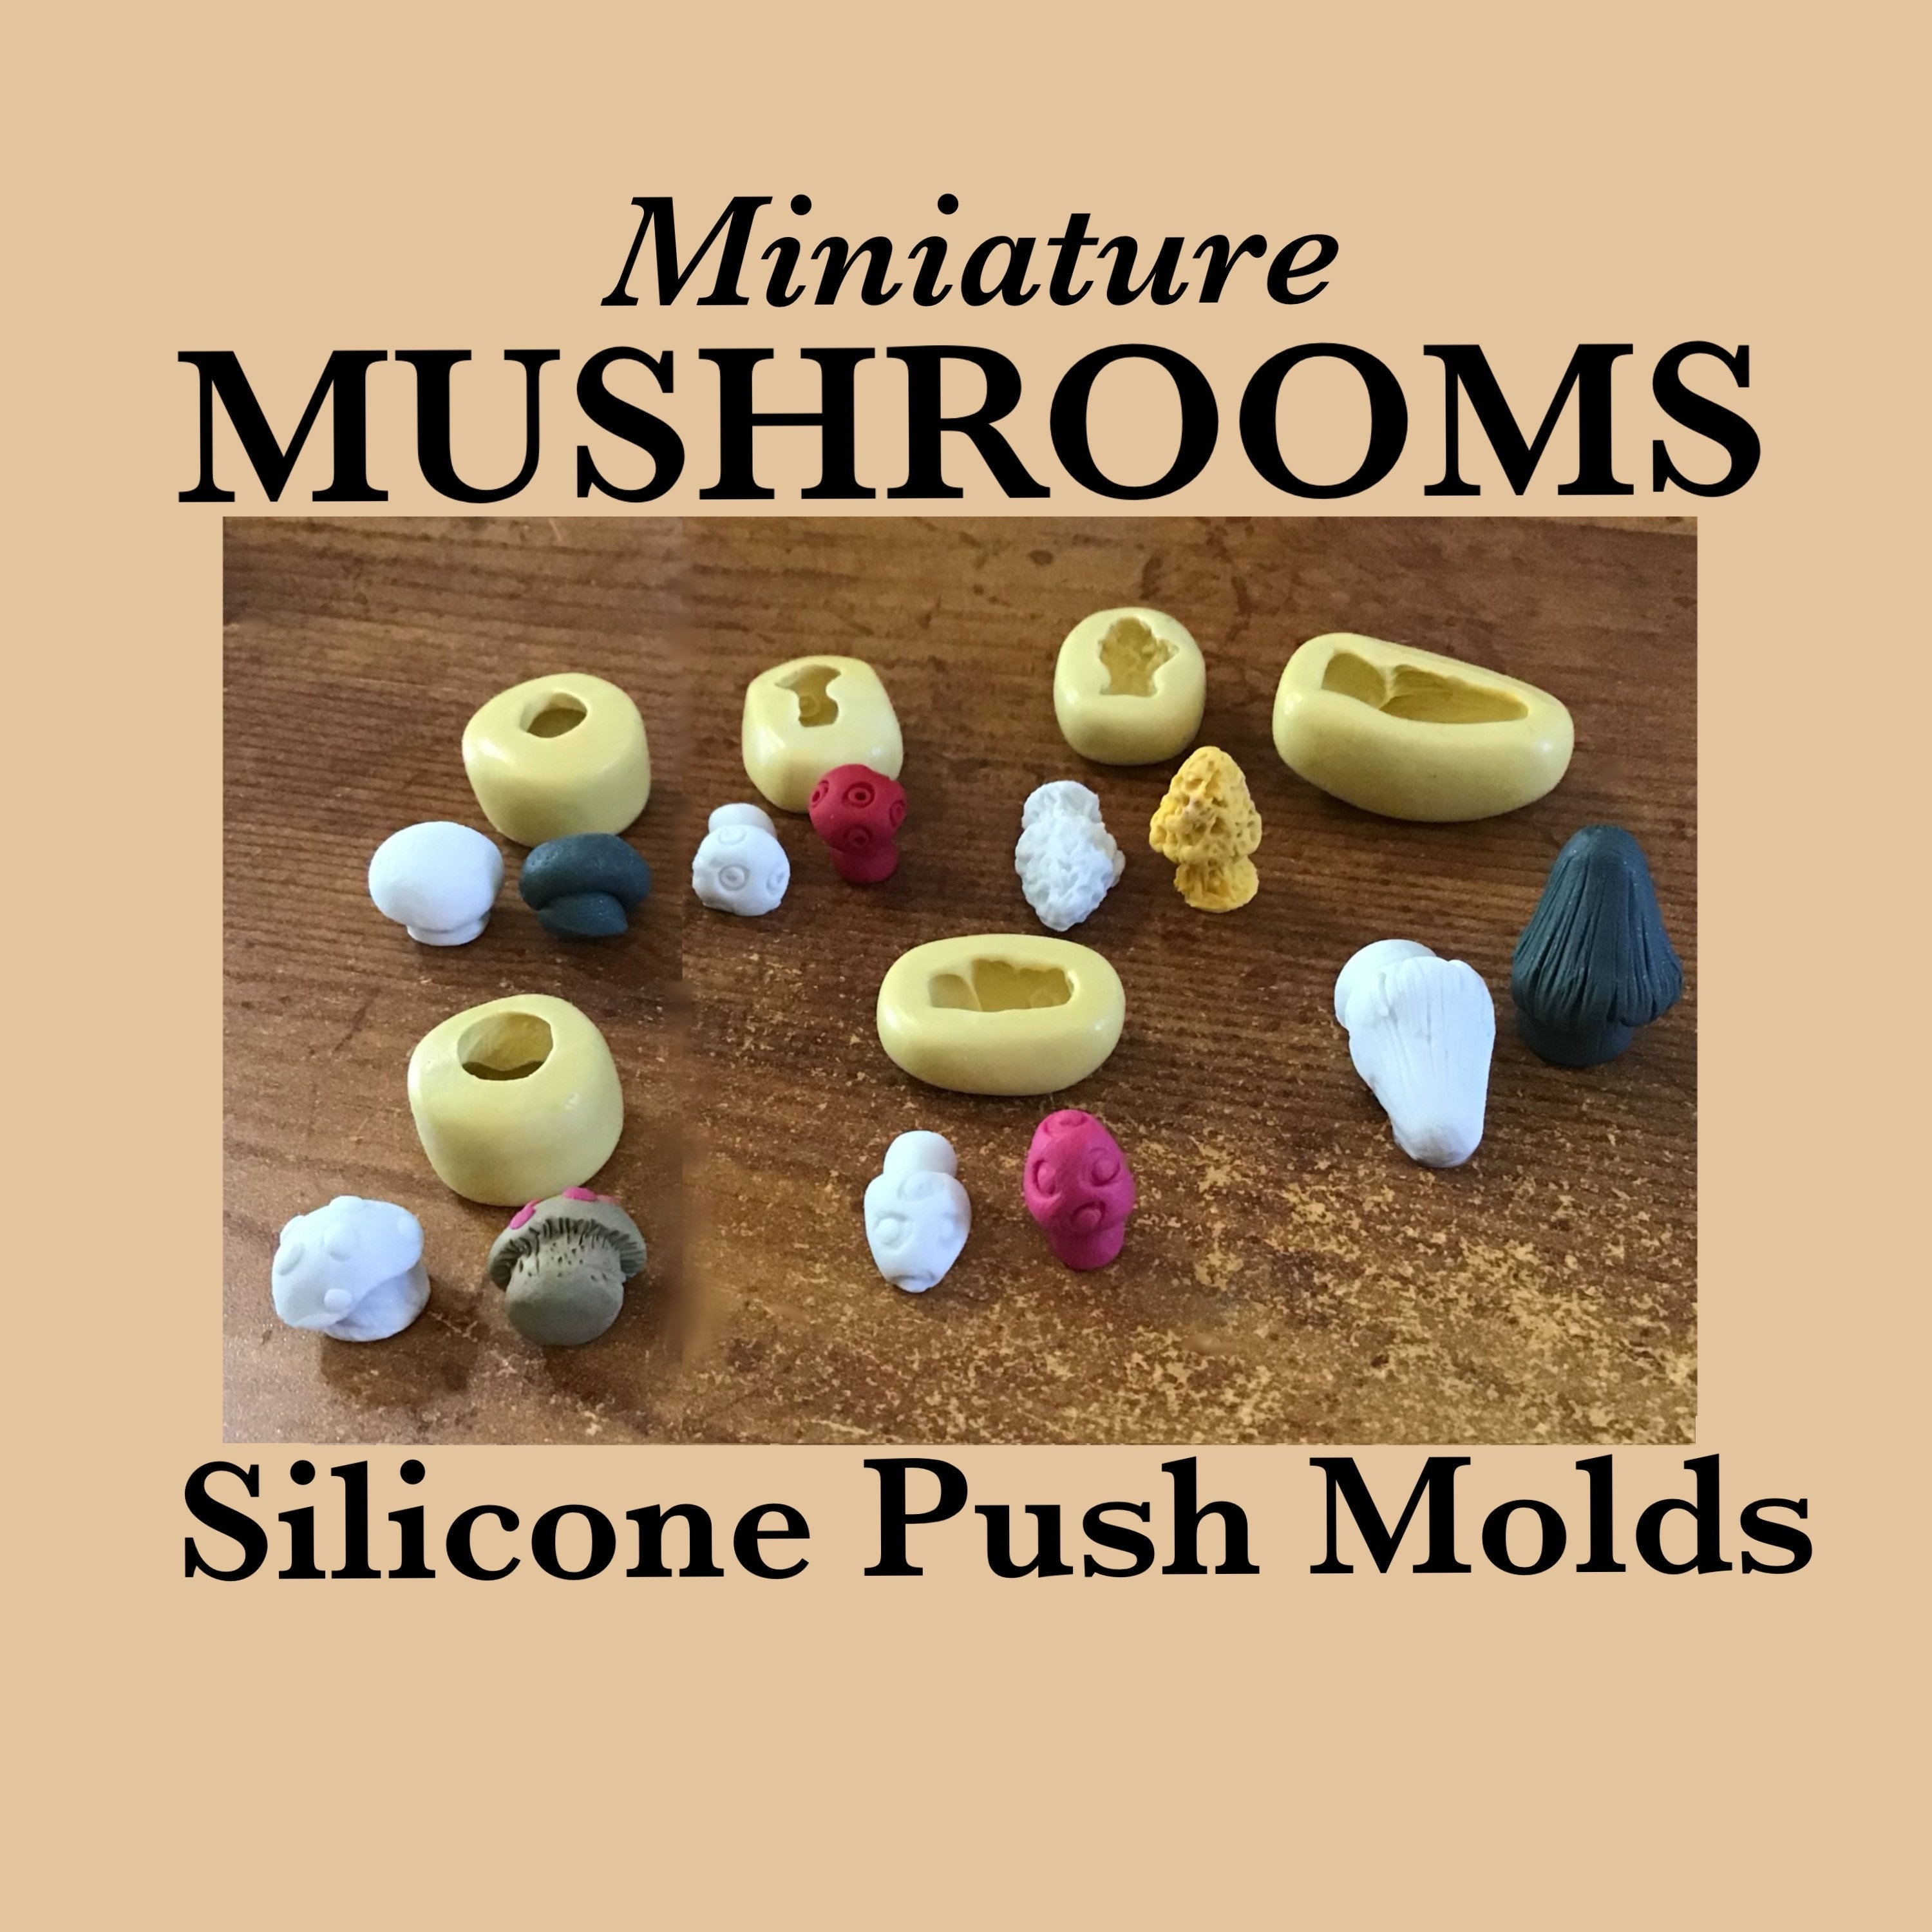 MUSHROOMS MINIATURE MOLDS, Silicone Mushroom Molds, Mushroom Push Molds,  Fairy Mushroom Molds, Flexible Molds, Morel Mold, Set of 6 